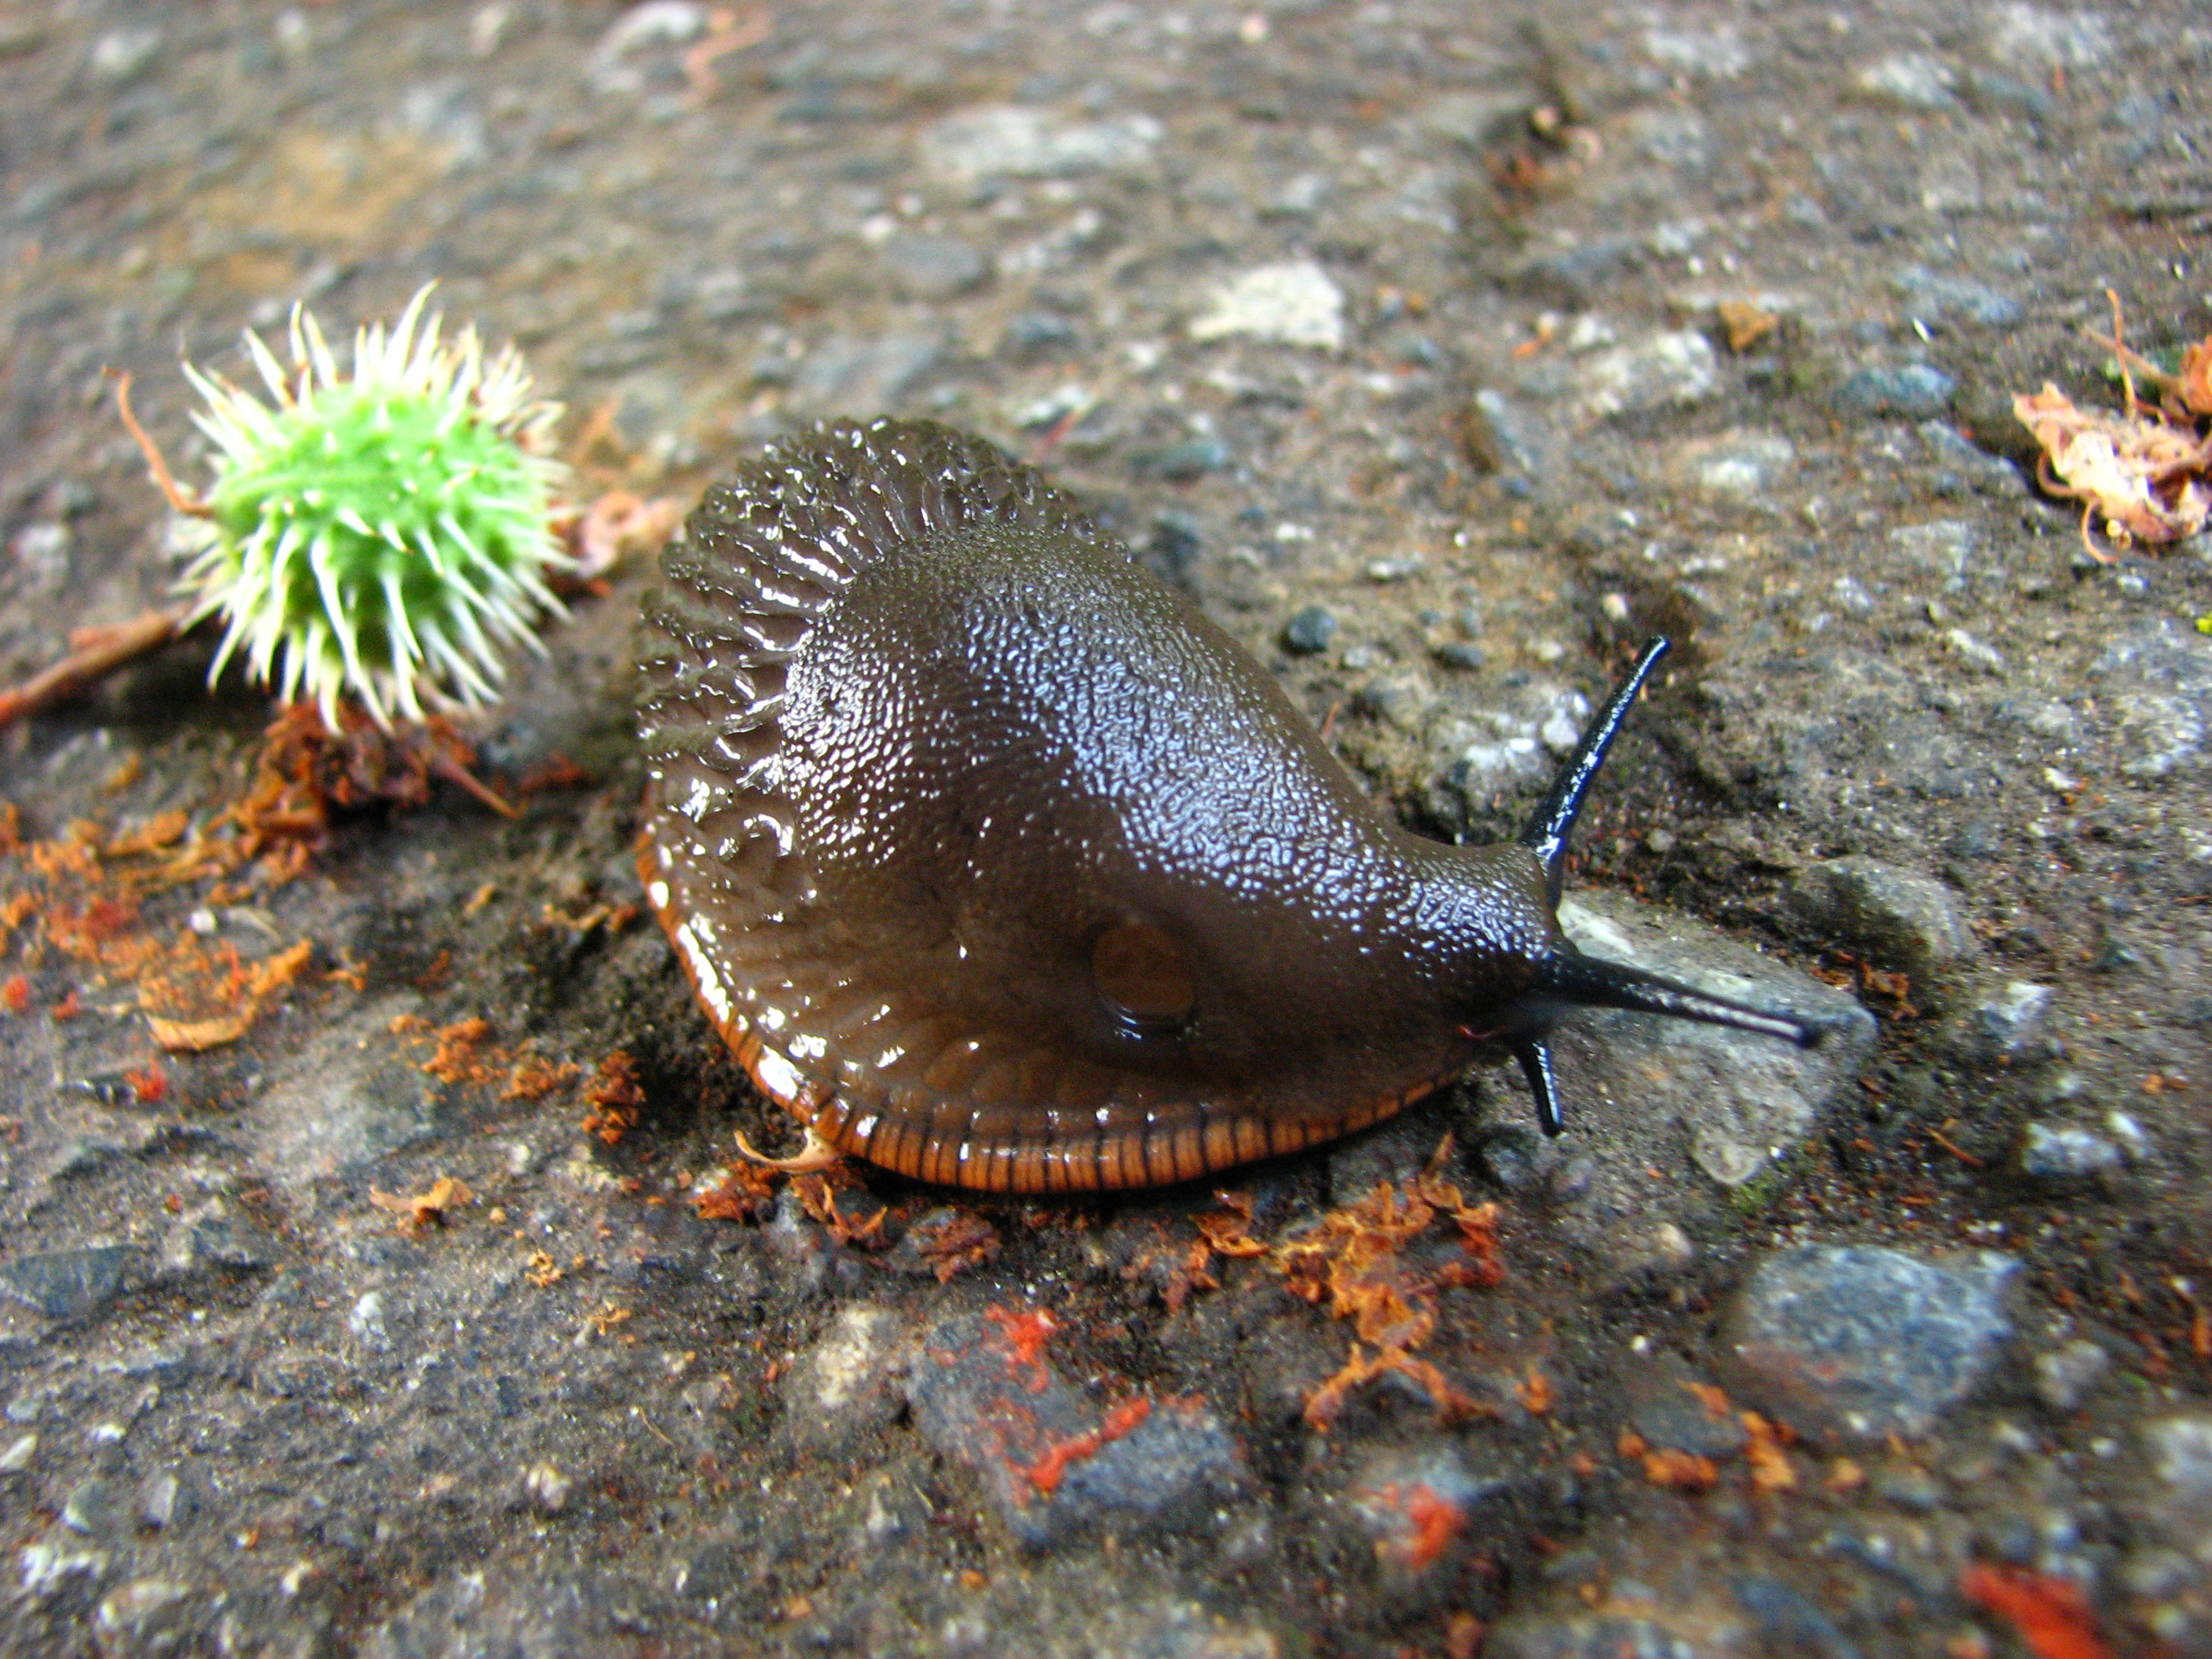 File:Slug in VanDusen Botanical Garden.jpg - Wikimedia Commons